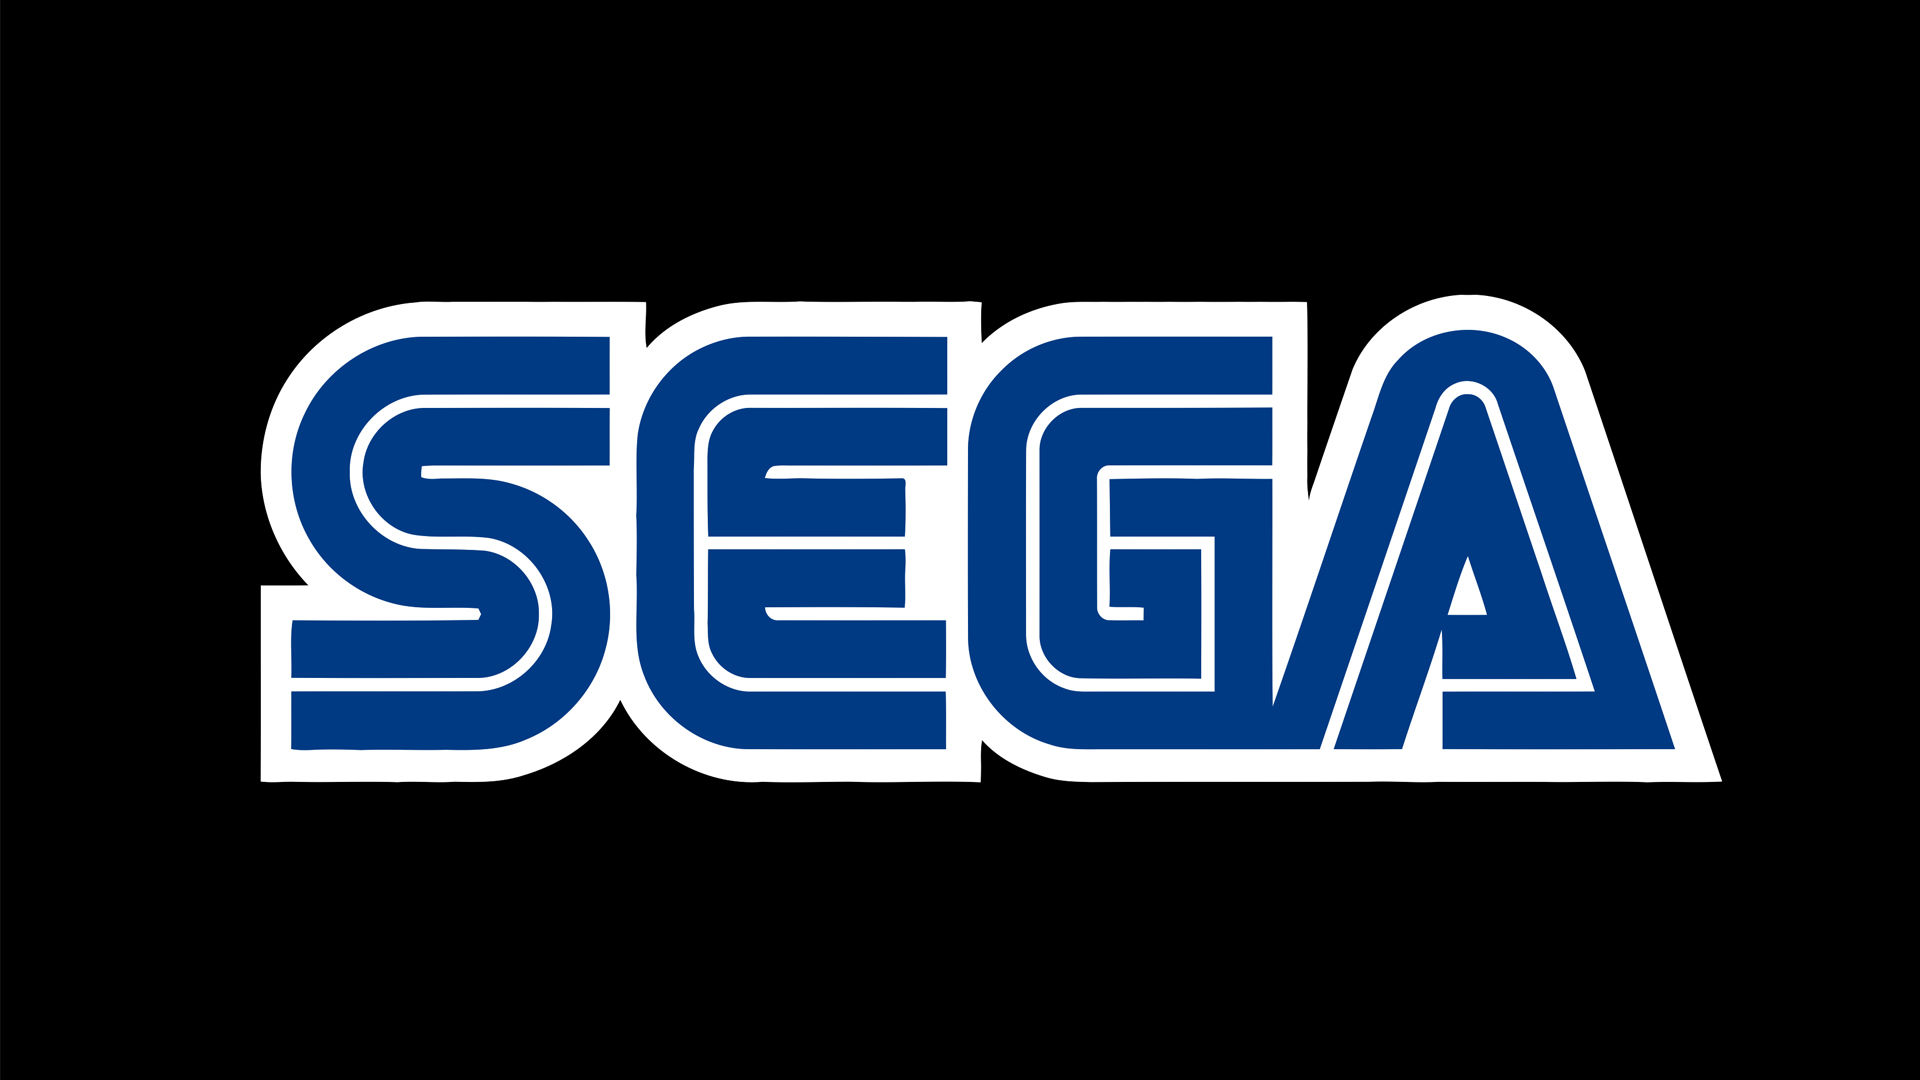 SEGA стала лучшим издателем 2020 года по версии Metacritic